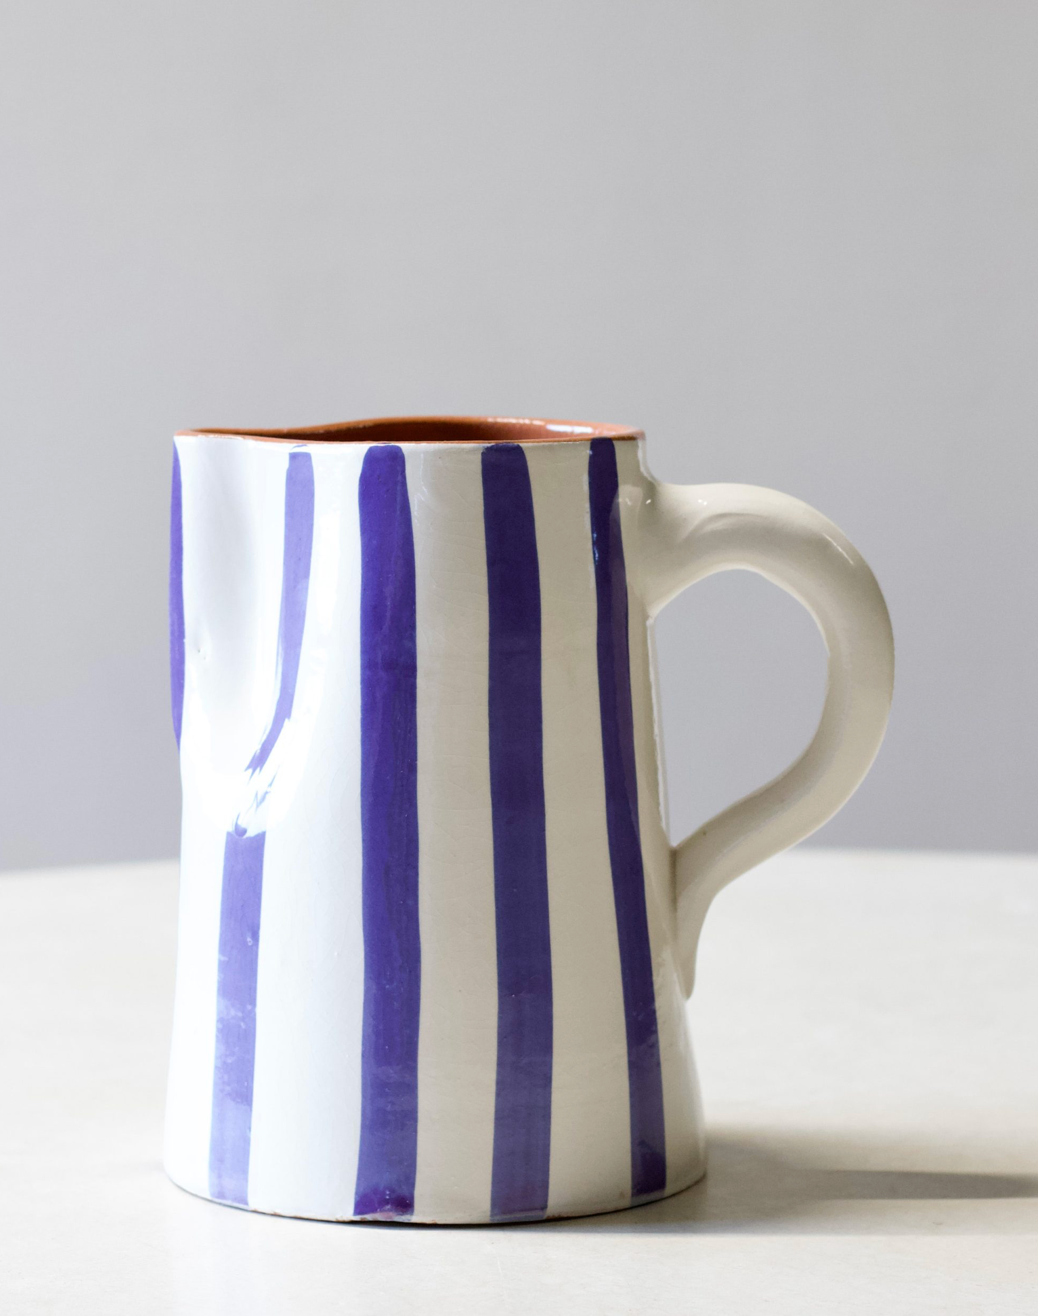 Household Hardware - Painted Carafe - White/Bleu Stripe